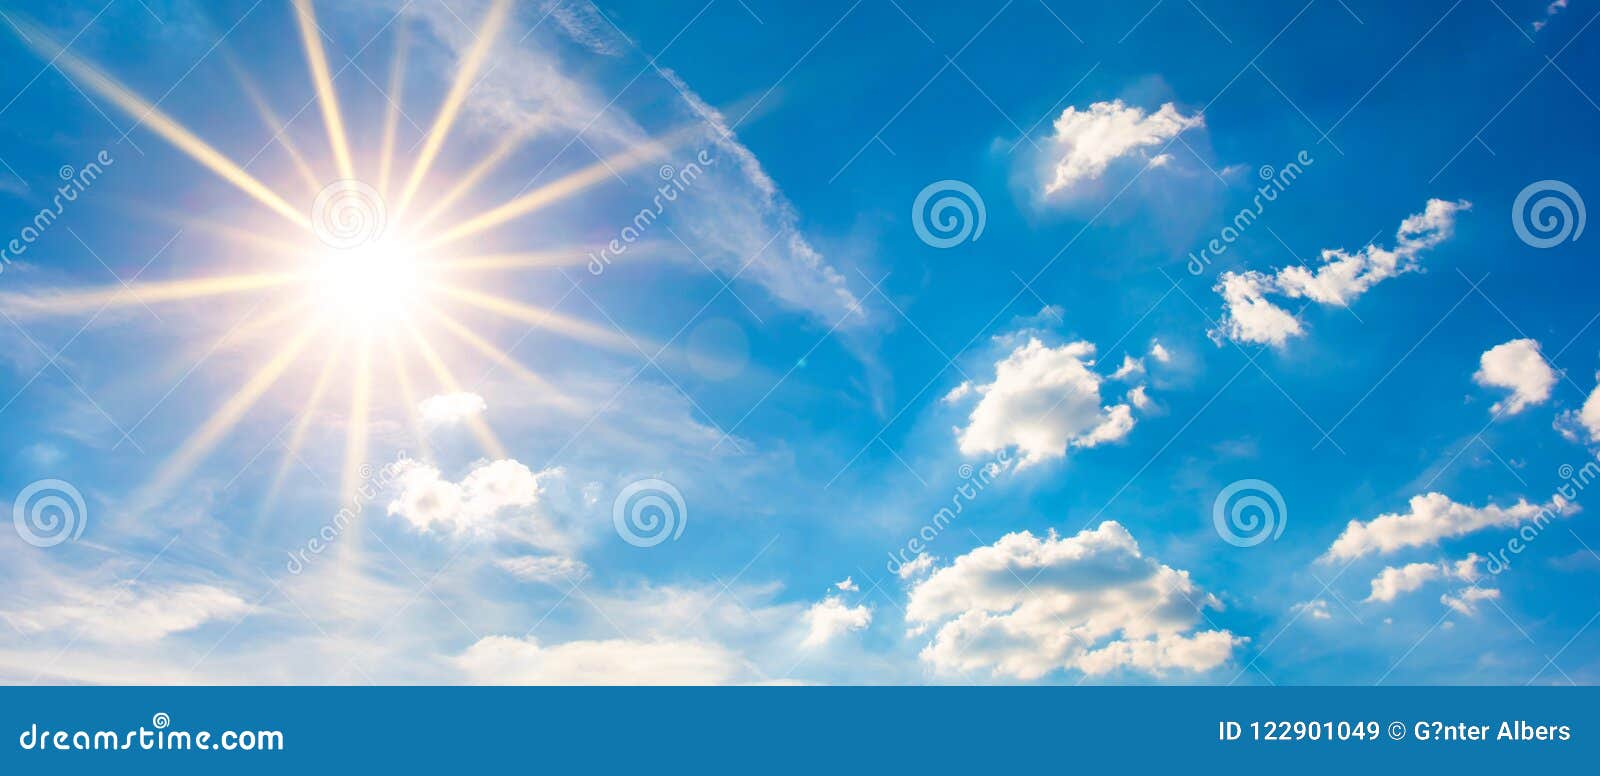 download 与蓝天和明亮的太阳的夏天背景 库存图片.图片